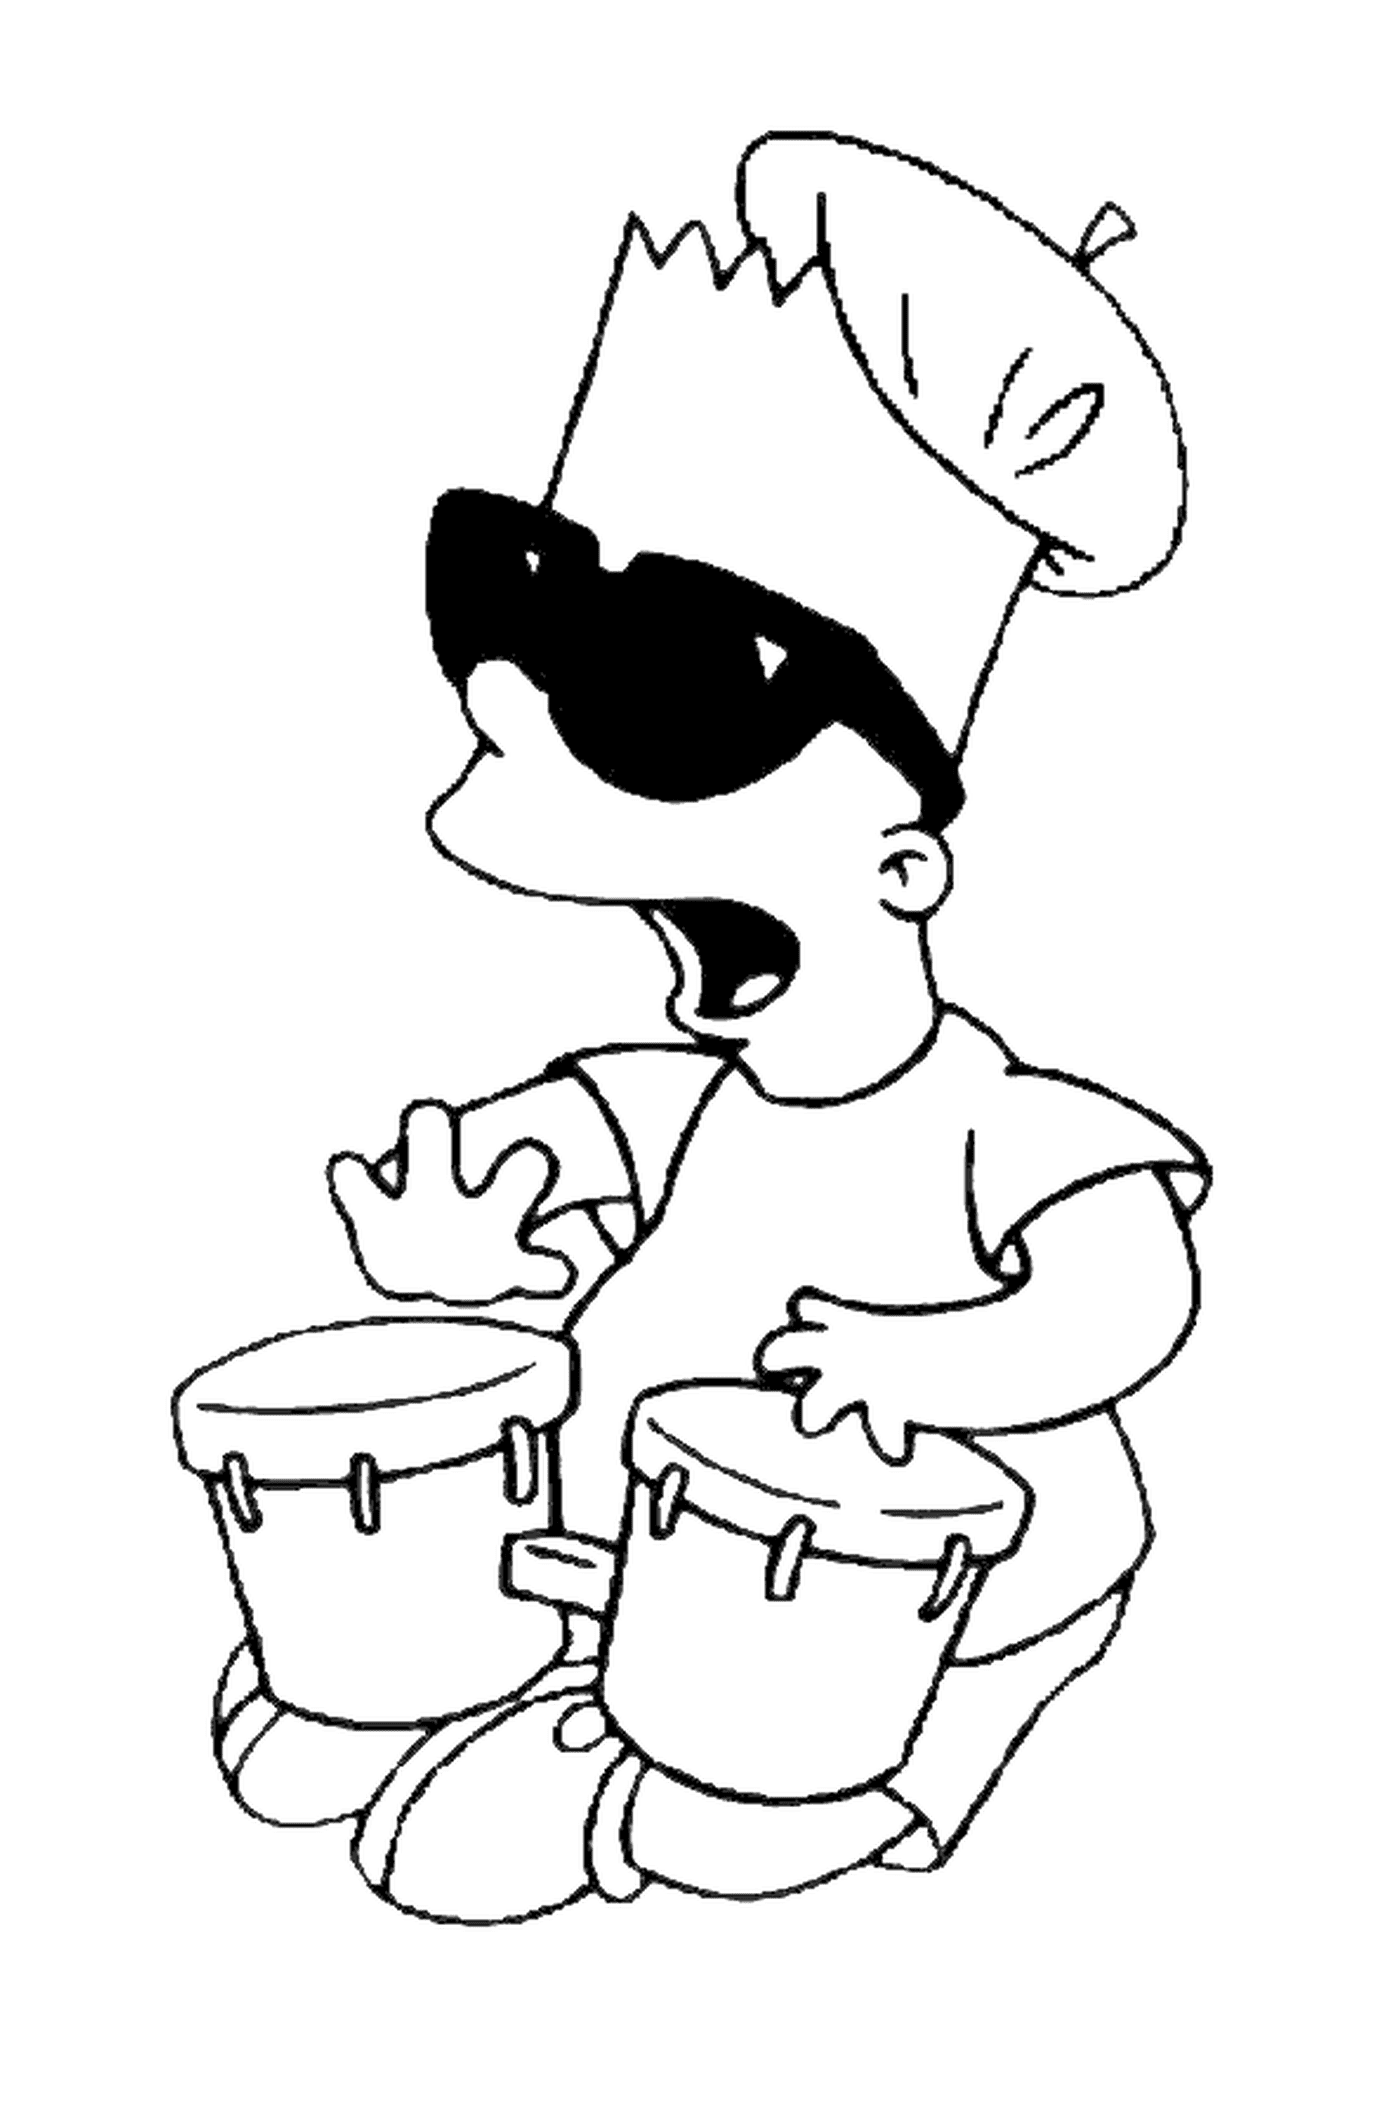  Bart hace música con tam-tams, nadie tocando un instrumento 